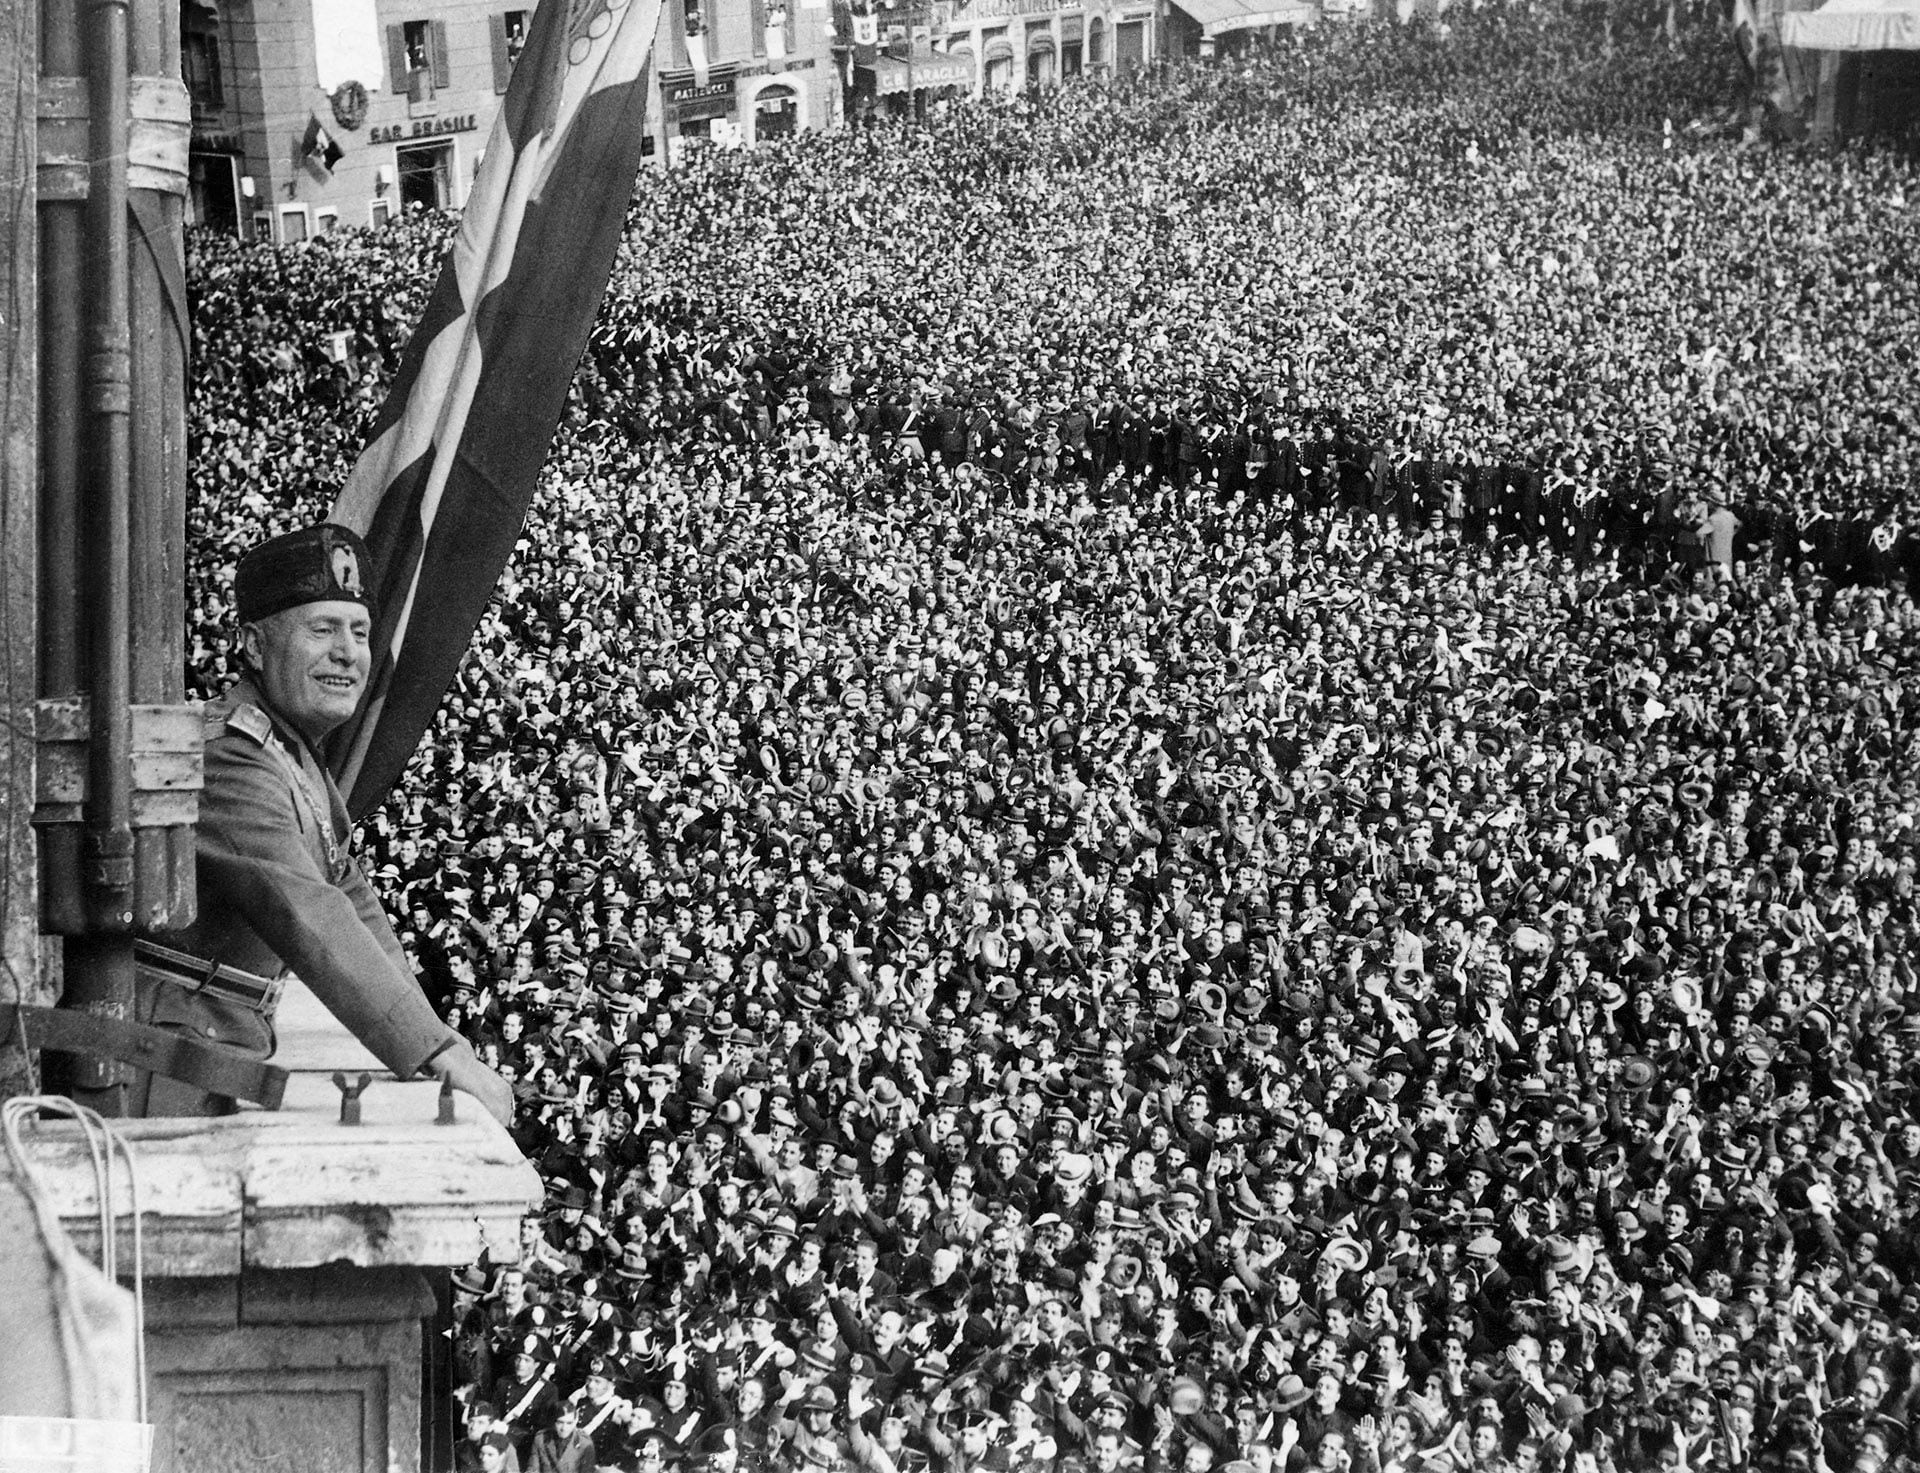 Benito Mussolini dirigiéndose a la multitud durante la Declaración del Imperio Italiano en Mayo 9, 1936, en el  Palazzo Venezia en Rome, Italy. (Photo by George Rinhart/Corbis via Getty Images)